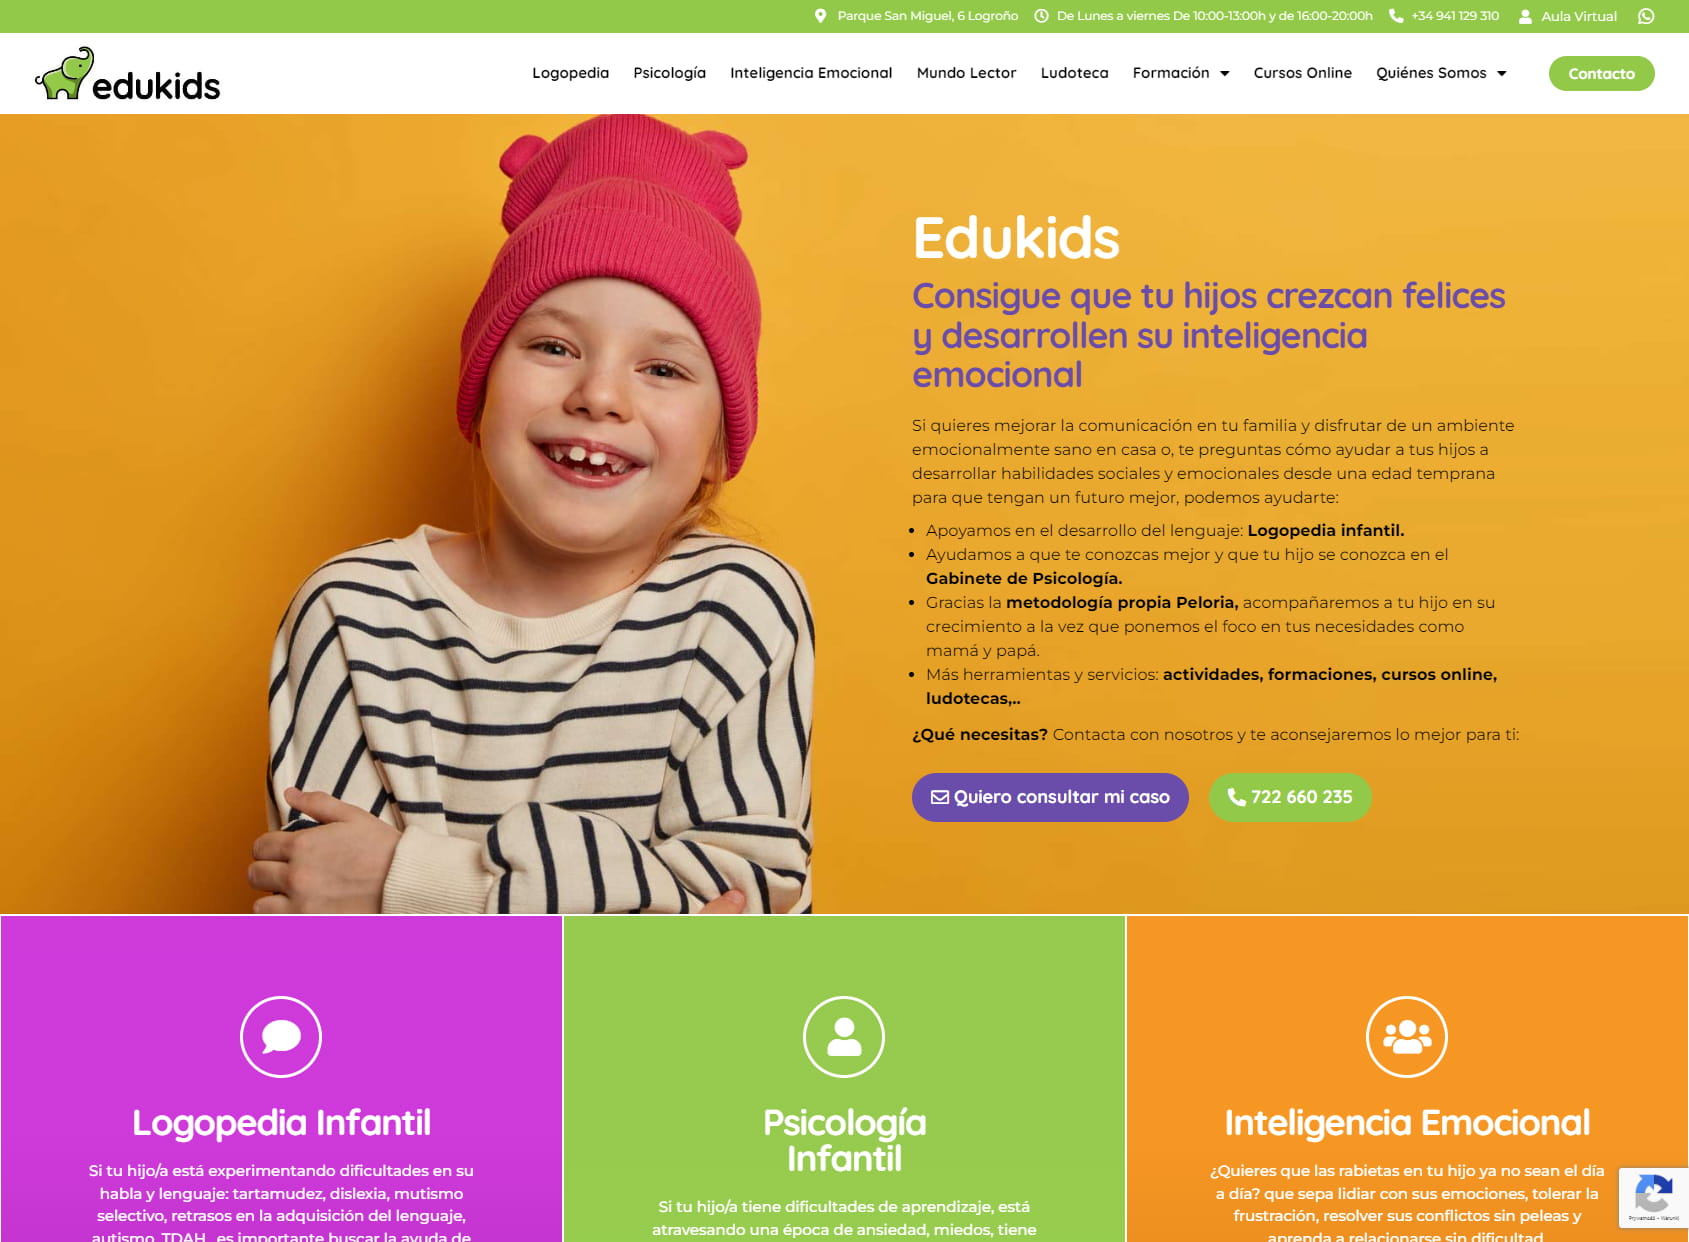 Edukids - Inteligencia Emocional, Psicología Infantil y Logopedia